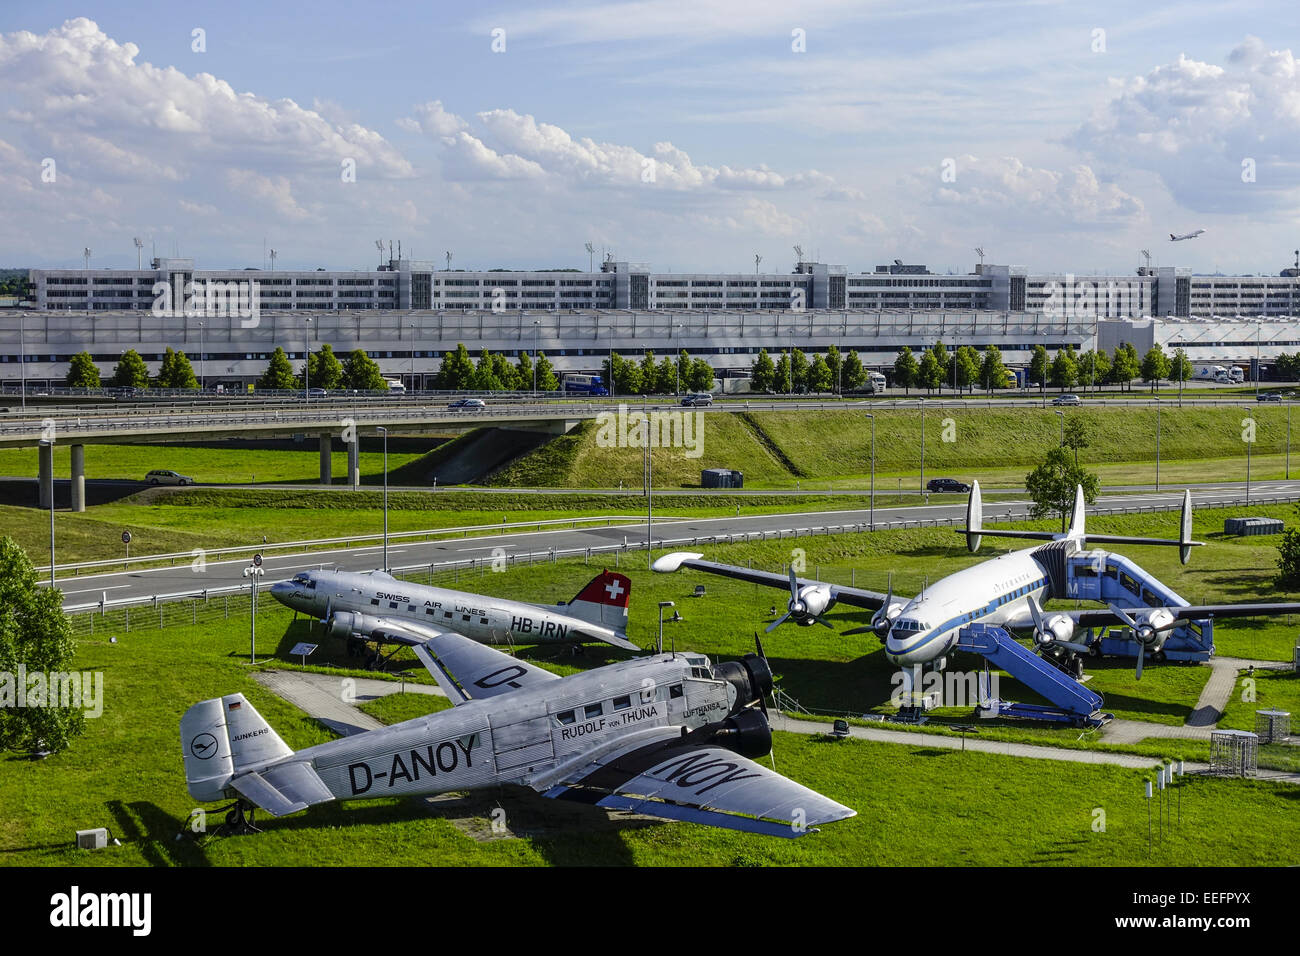 Historische Flugzeuge am Besucherpark Flughafen München II, München, Bayern, Deutschland, Historic aircraft on visitor Park at M Stock Photo